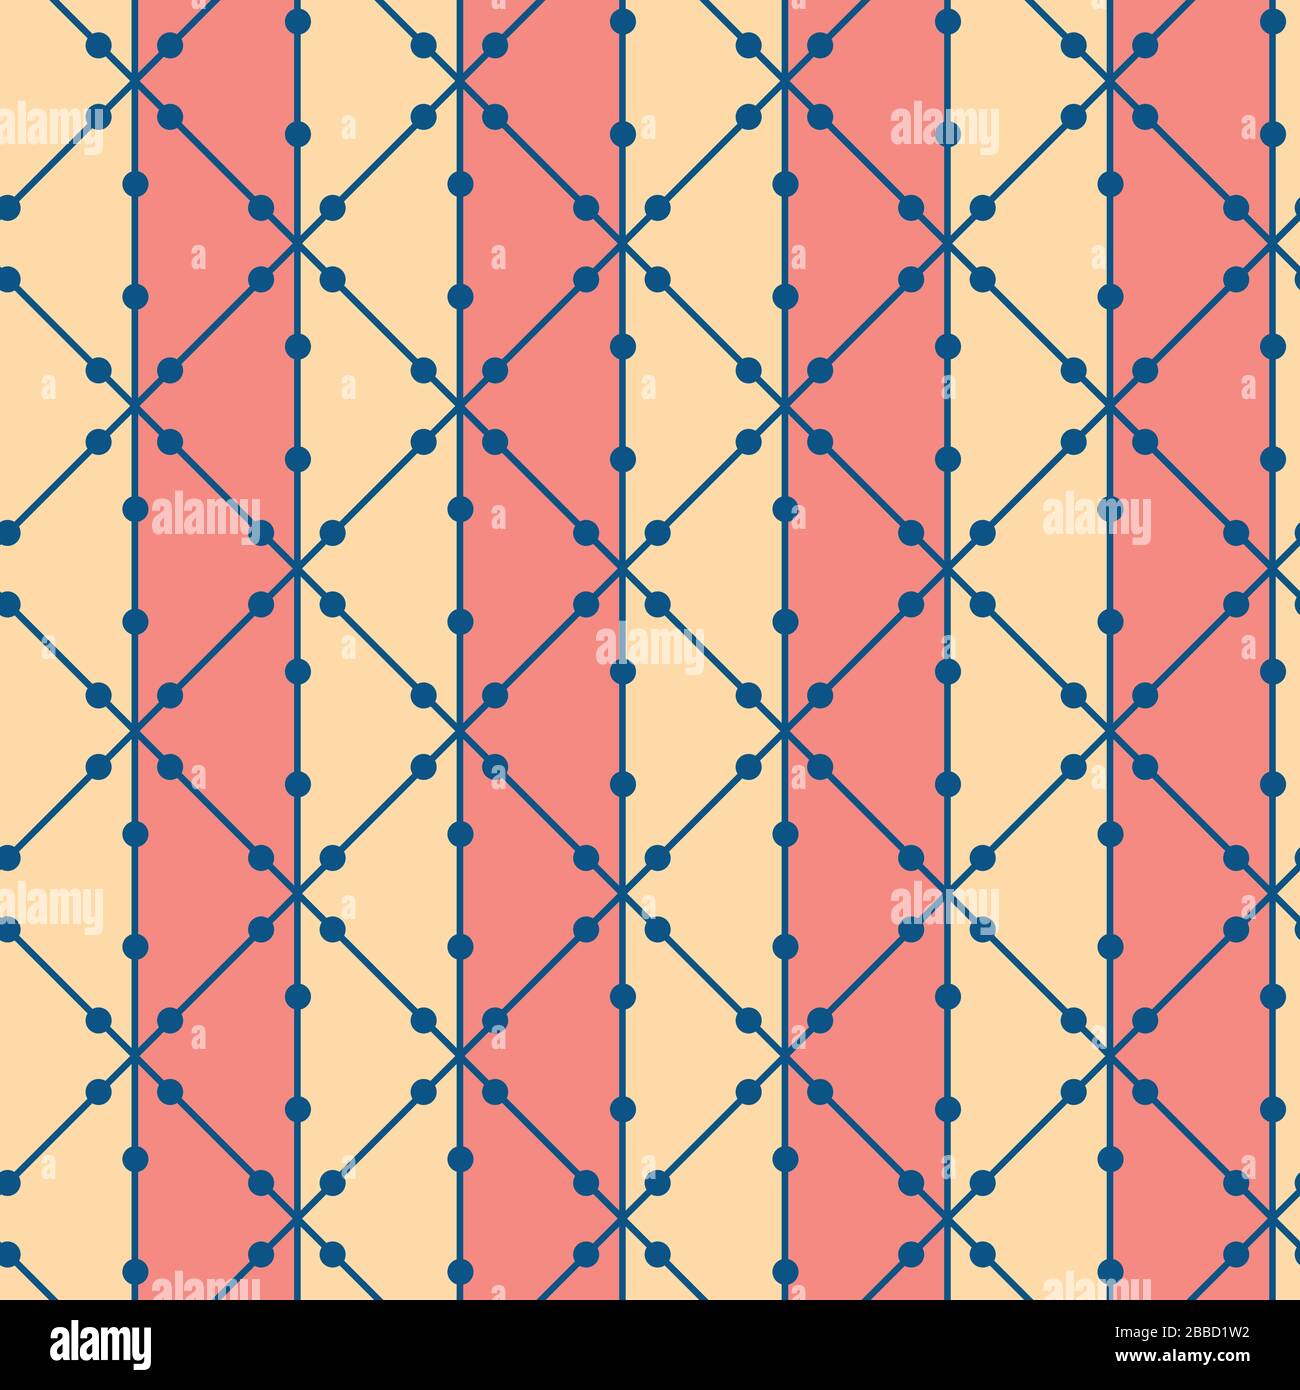 Isometrisches Raster und Stripe-Vektor nahtloser Musterhintergrund. Minimale Hintergrundfarbe in blau und gelb. Lineares, geometrisches vertikales Design. Farbenfrohes modernes Design Stock Vektor